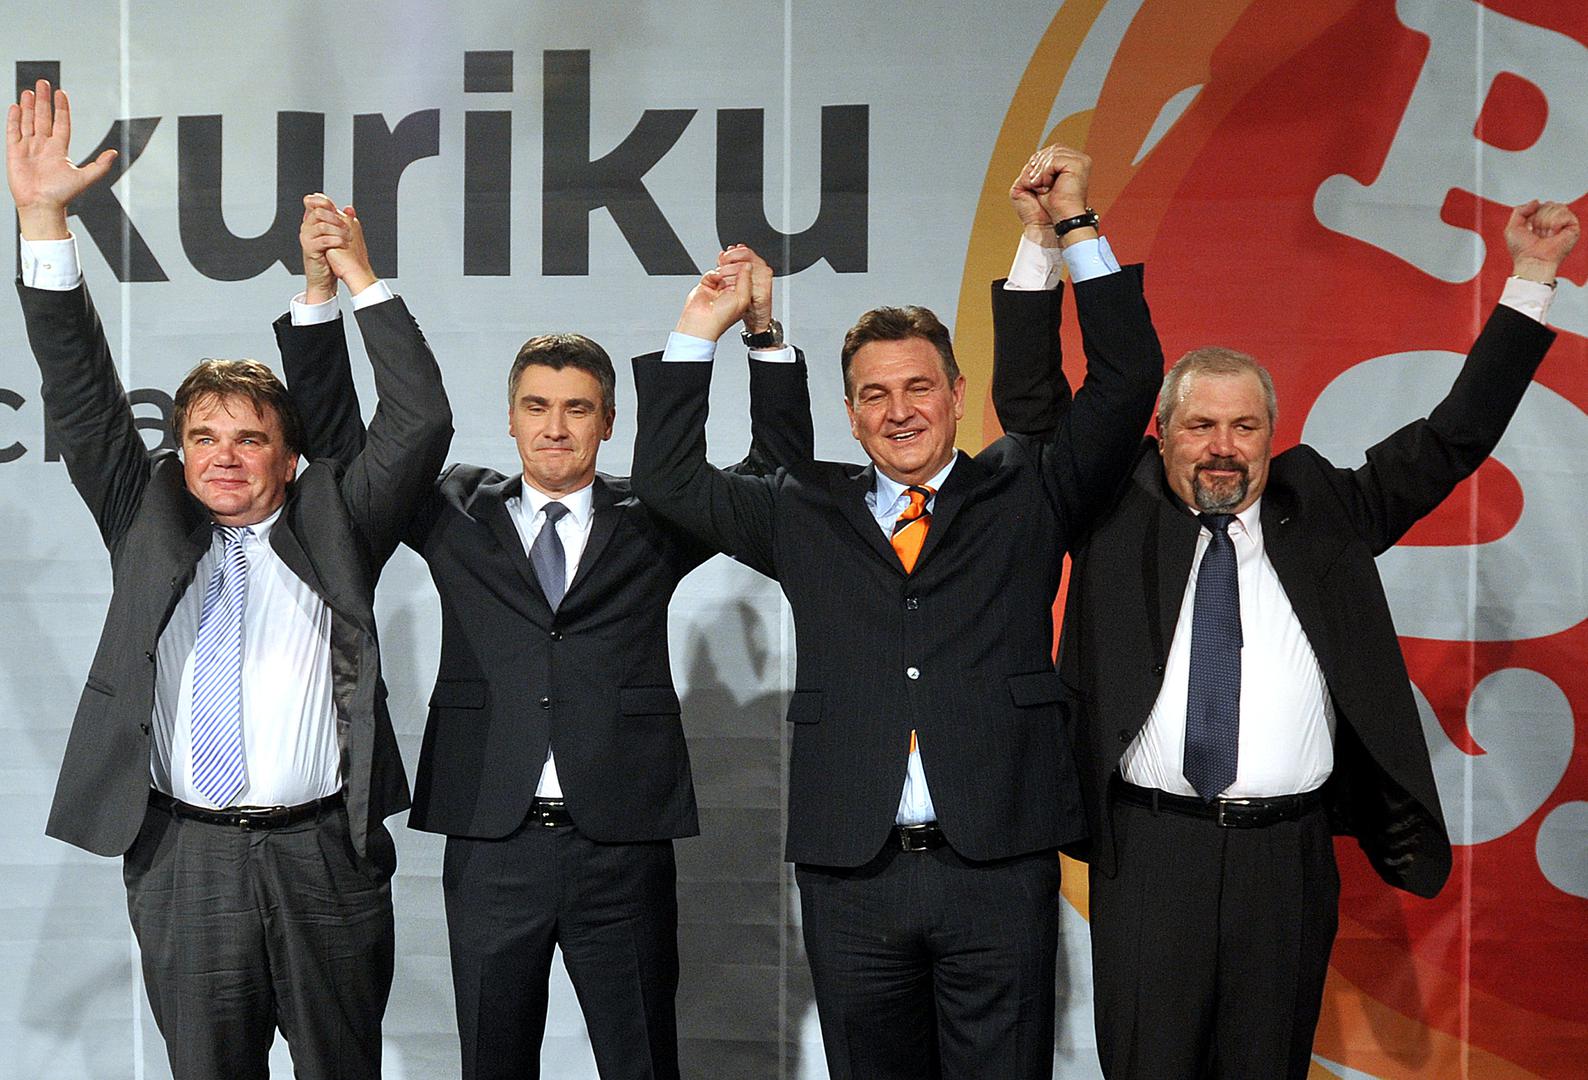 Nakon izbora 2011. godine HNS se vraća na vlast u sklopu Kukuriku koalicije koju je predvodio Milanovićev SDP. HNS u tom sazivu ima 11 zastupnika i četiri ministra u Vladi.